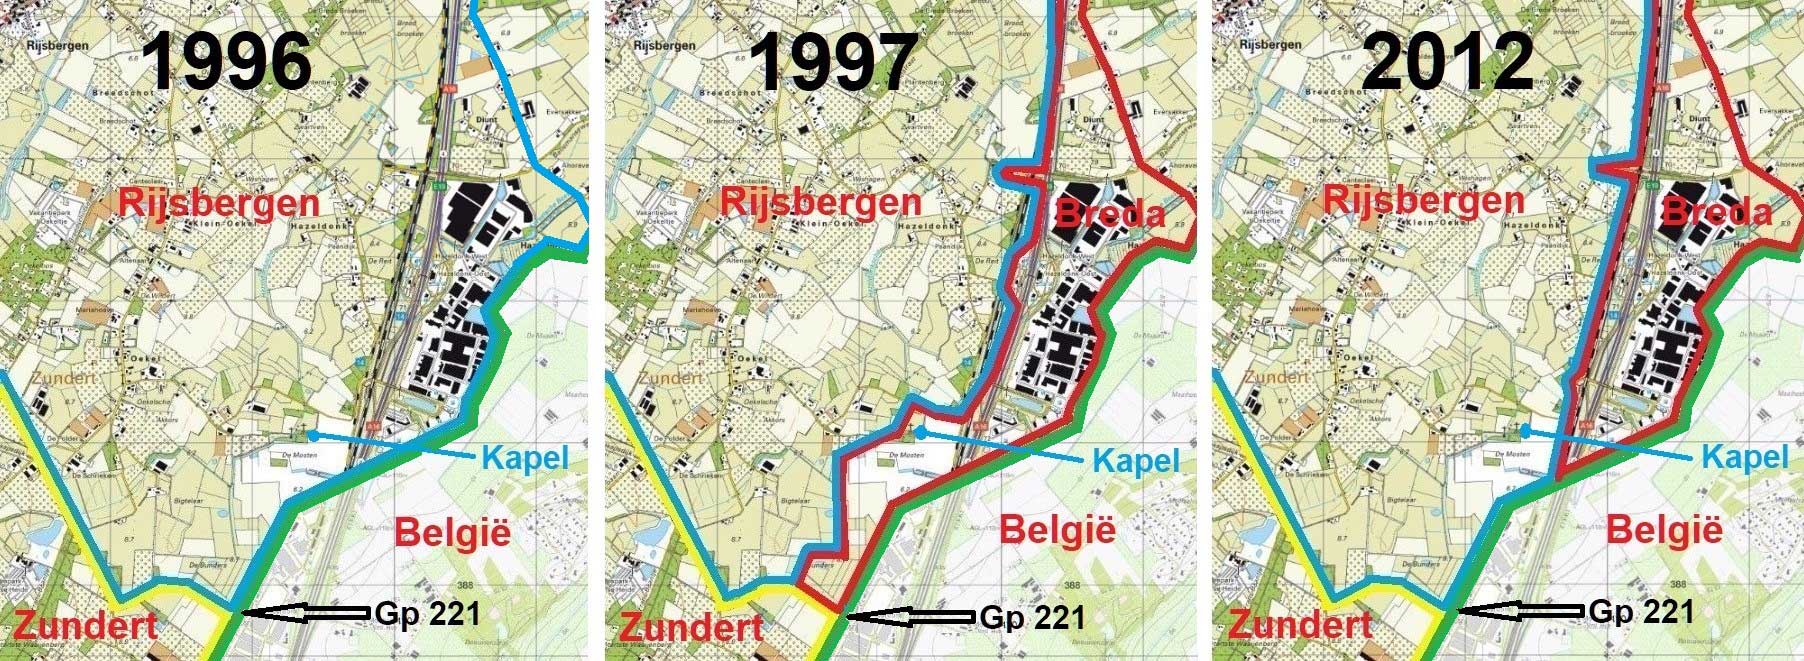 Situatie gemeentegrens Rijsbergen. Blauw: Zuid-Oostelijke grens van Rijsbergen, Rood: Zuidelijke grens van Breda, Geel: Noord-Oostelijke grens van Zundert, Groen: Westelijke grens van België.